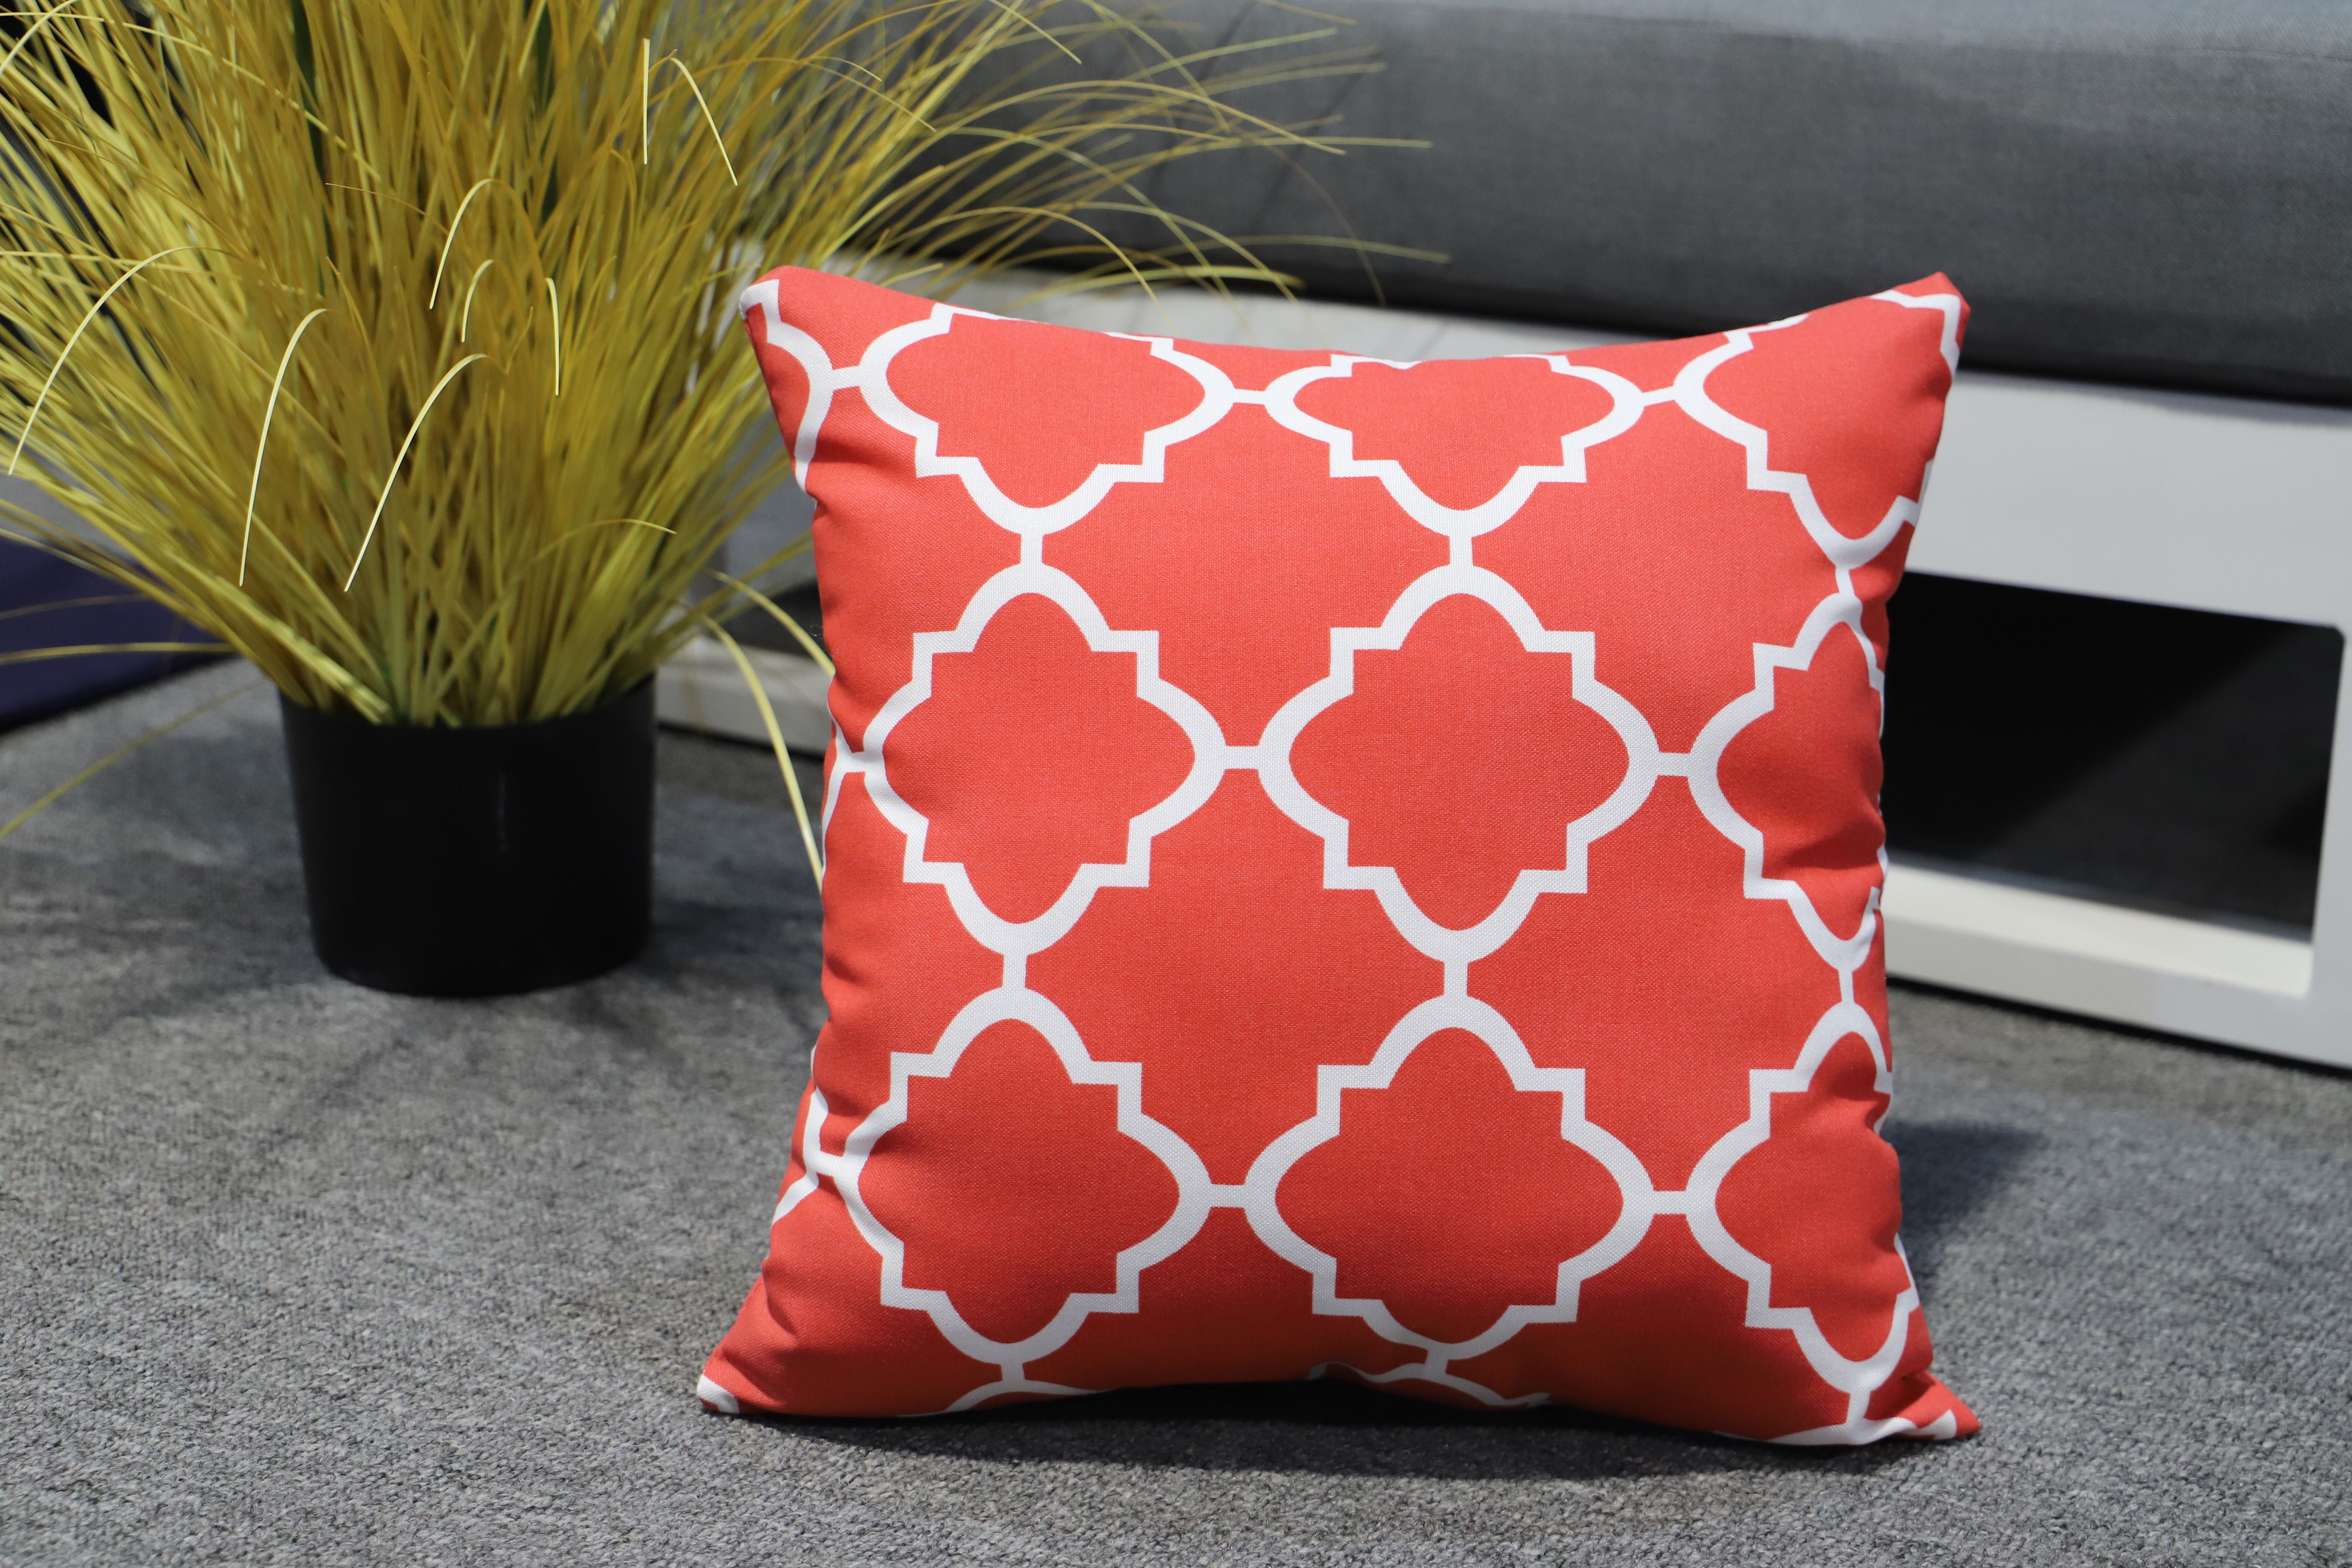 MOSS MOSS-0912G - 16 "x 16" RED BACKGROUND decorative pillow